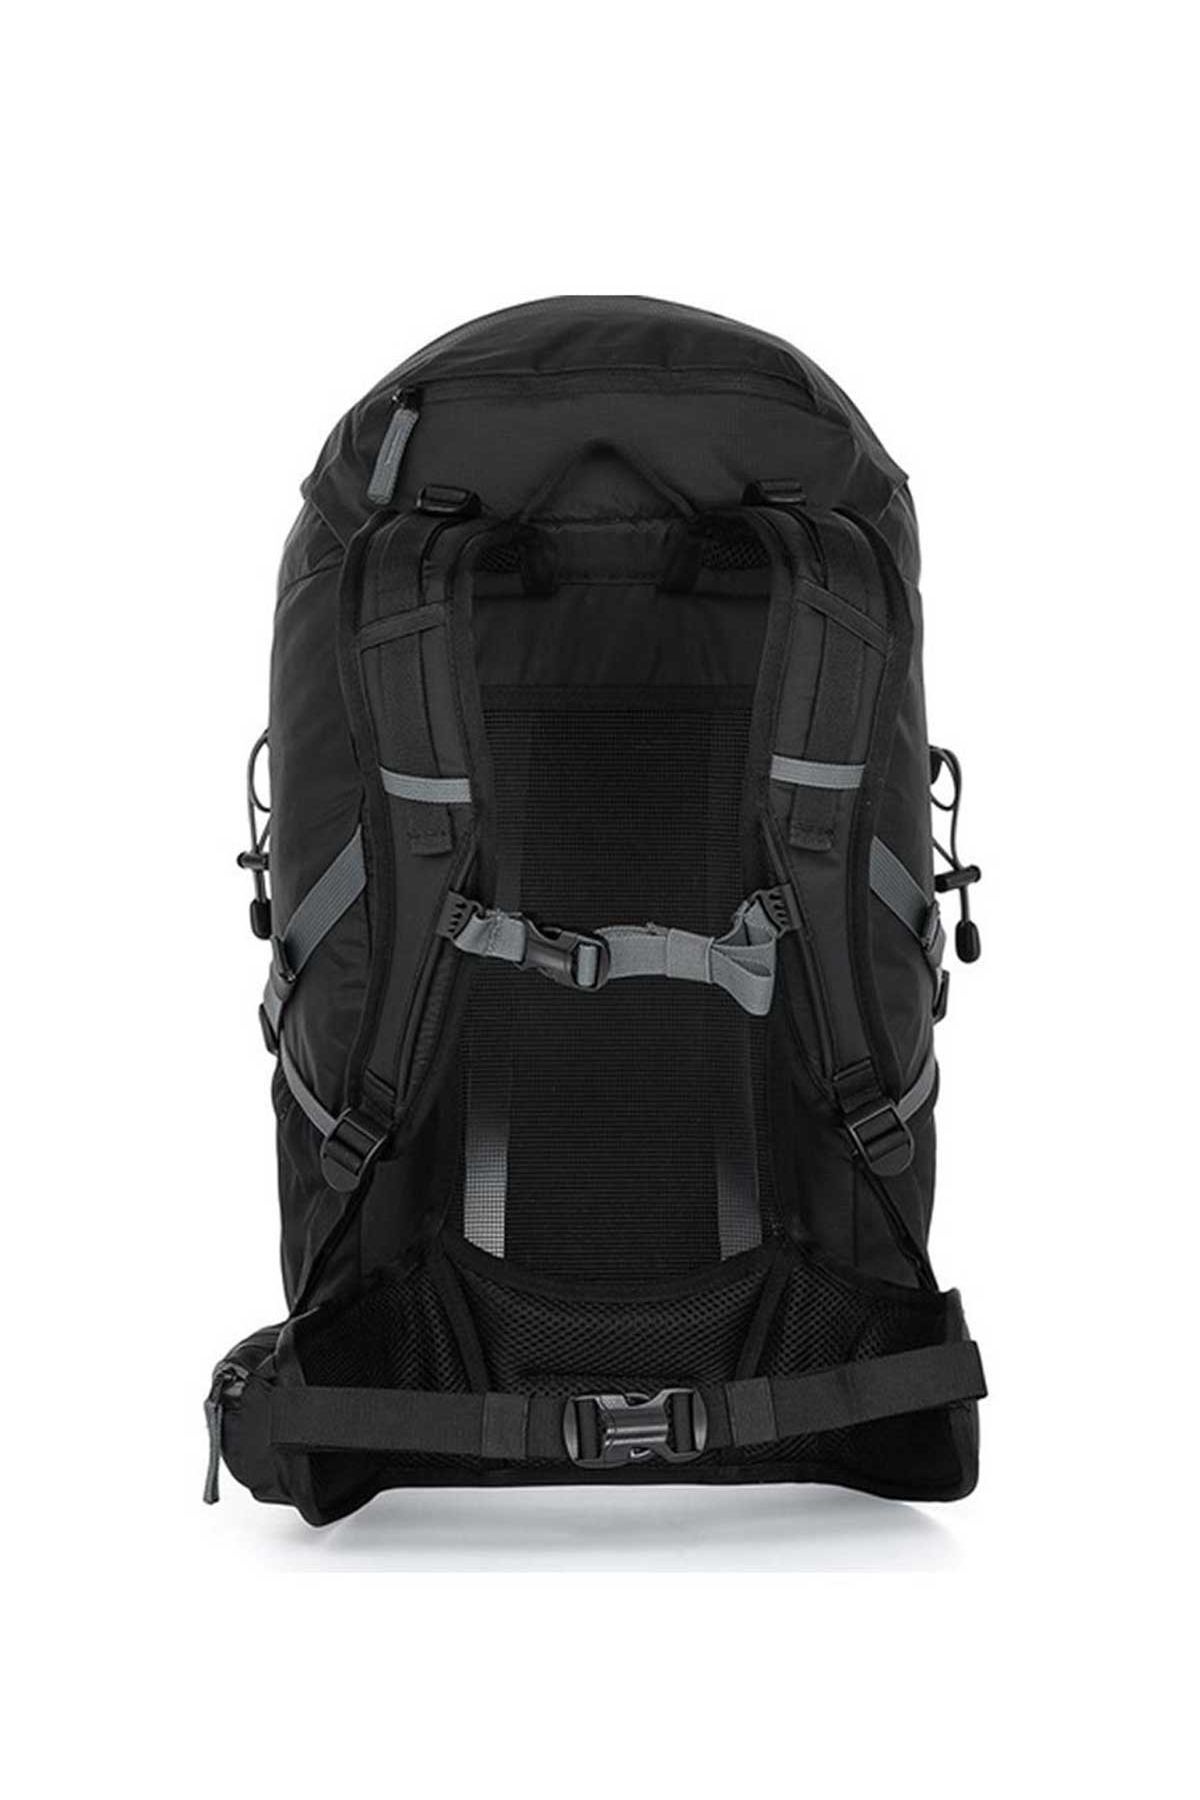 Loap Erkek Montasio Trekking Backpack 45 Lt Bh2299 V05t